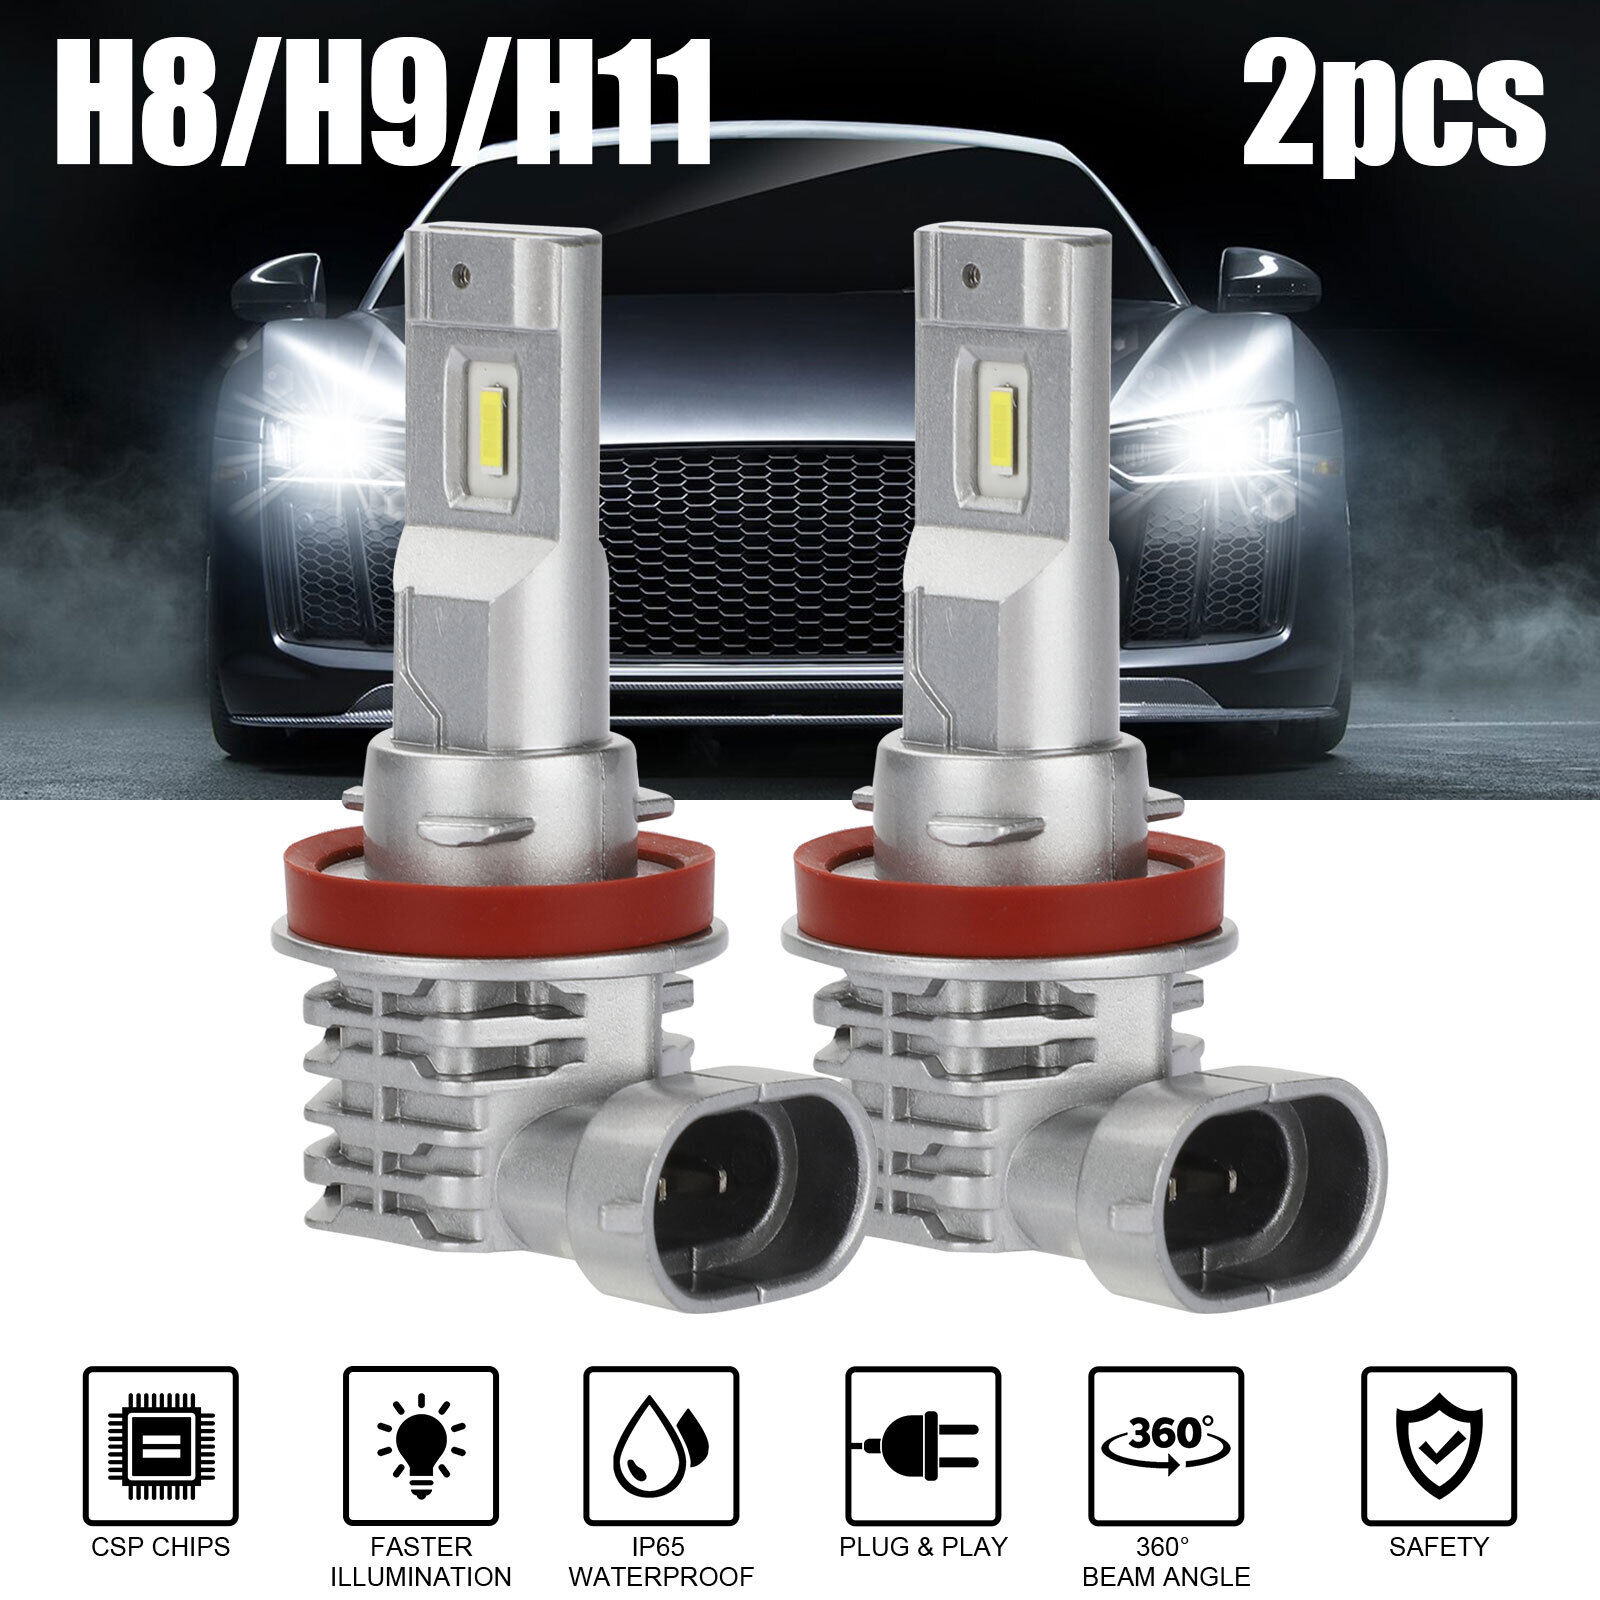 2pcs Car Led Headlight Kit H11 H9 H8 Super Bright Fog Lamp Daytime Running Light Bulbs 6000k White Waterproof